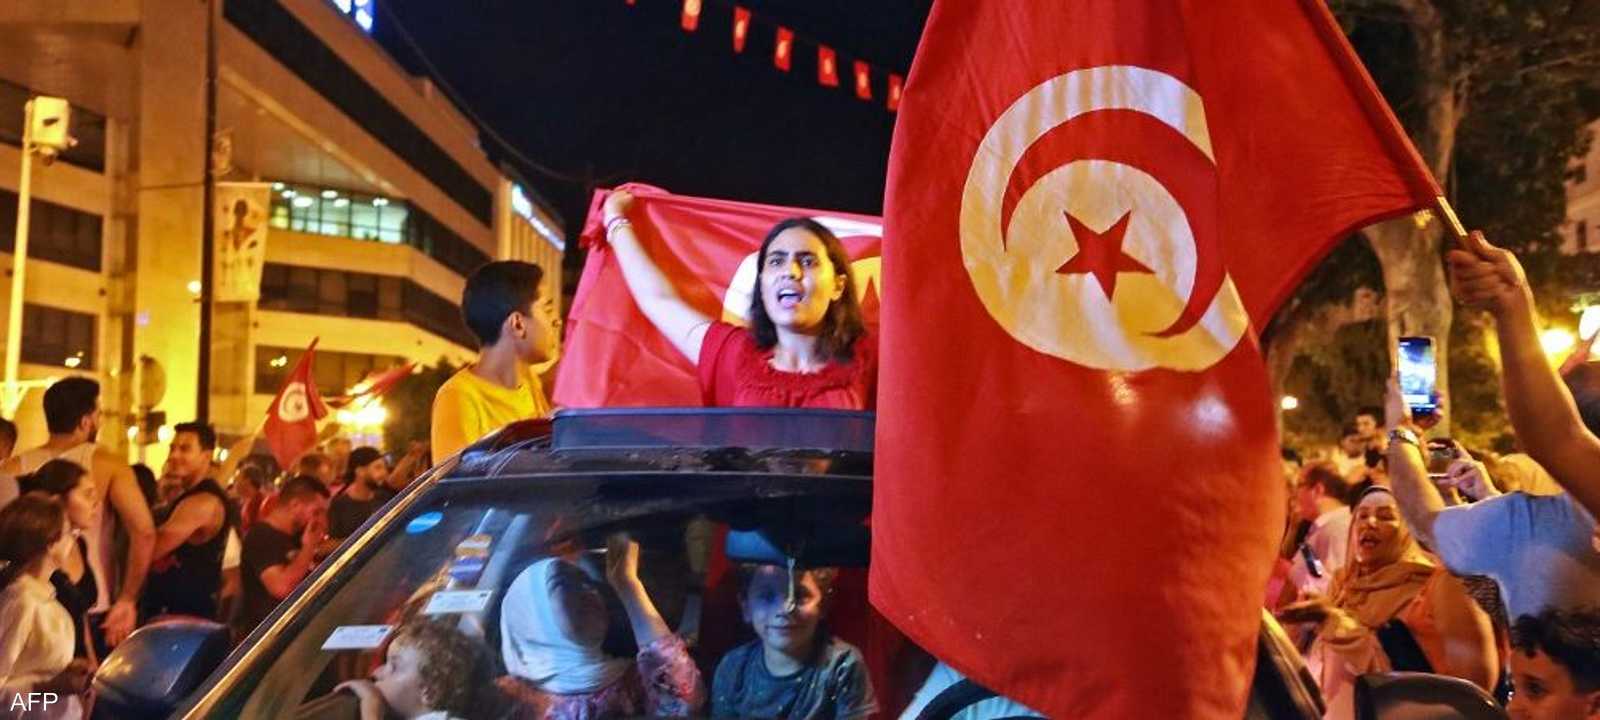 تونس في انتظار محطات سياسية و قانونية قادمة